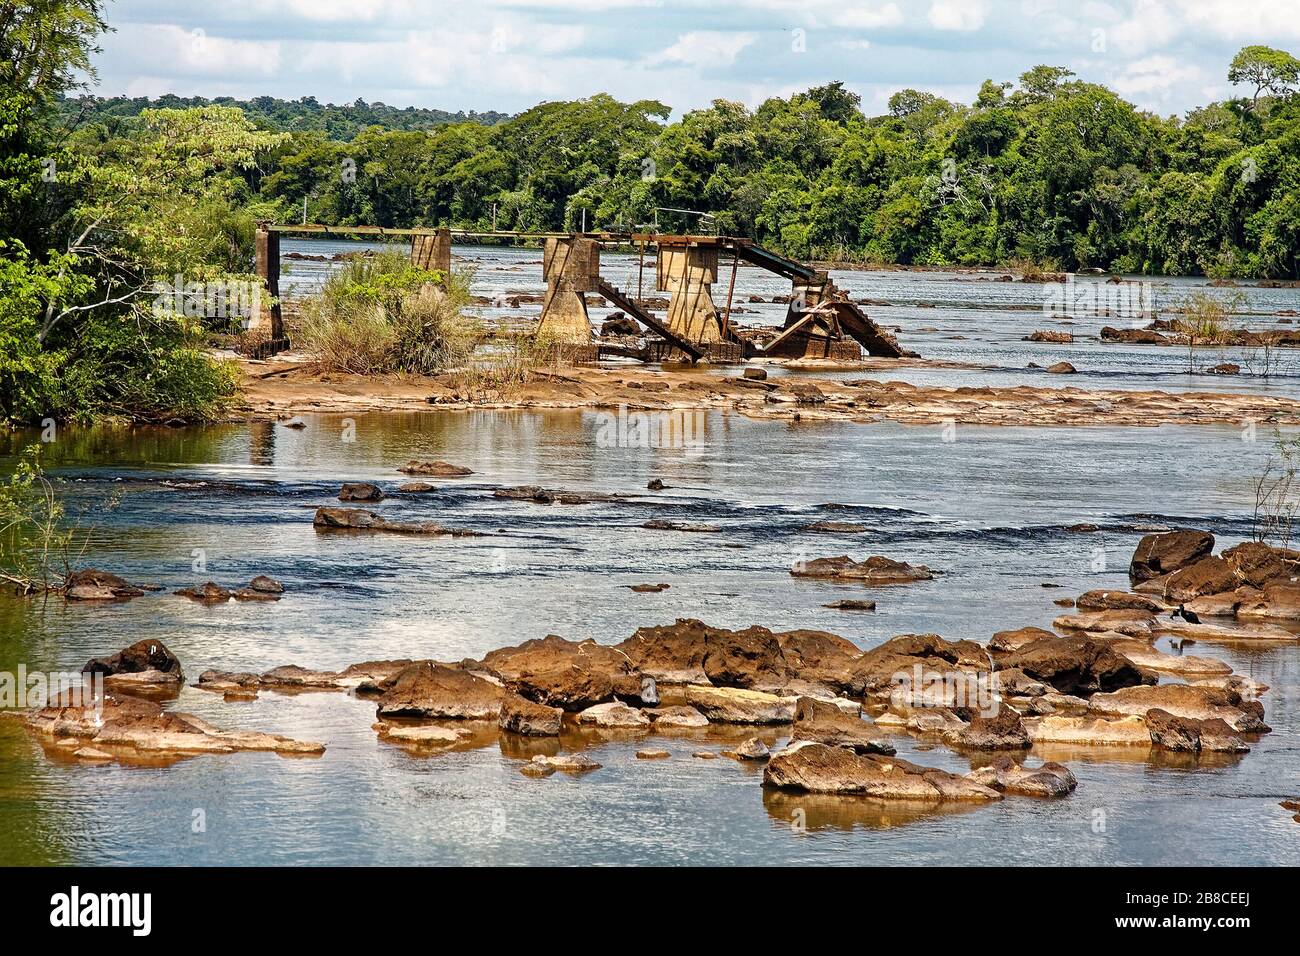 Vieux pont; vestiges; abandonnés, tombant dans l'eau, rivière Iguassu; parc national des chutes d'Iguassu; Iguazu, Iguacu, Amérique du Sud; Argentine; été Banque D'Images